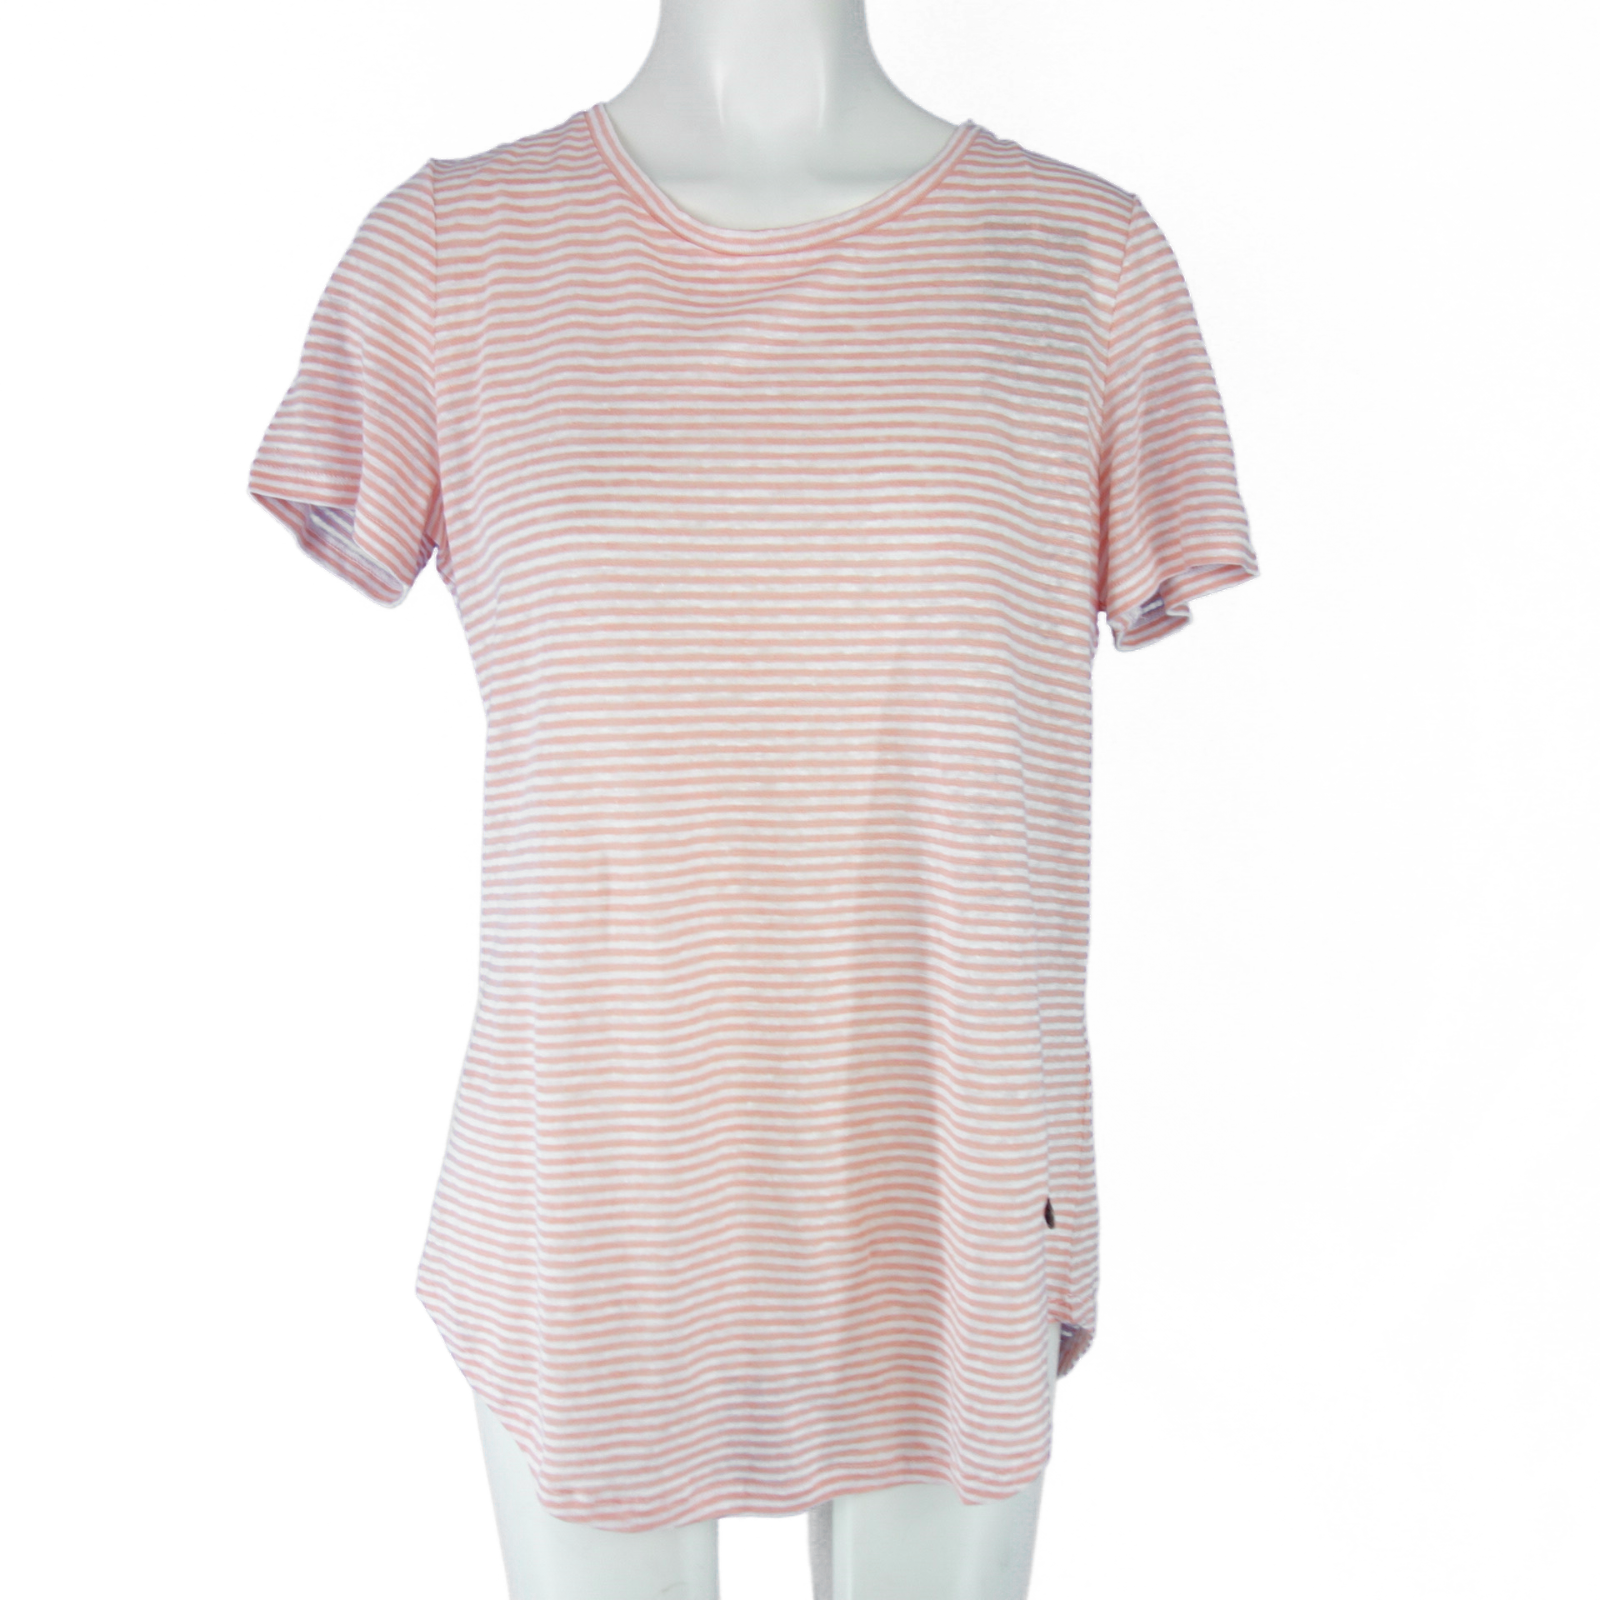 MALVIN Damen T Shirt T-Shirt Damenshirt Oberteil Rosa Weiß 42 Leinen Np 79 Neu